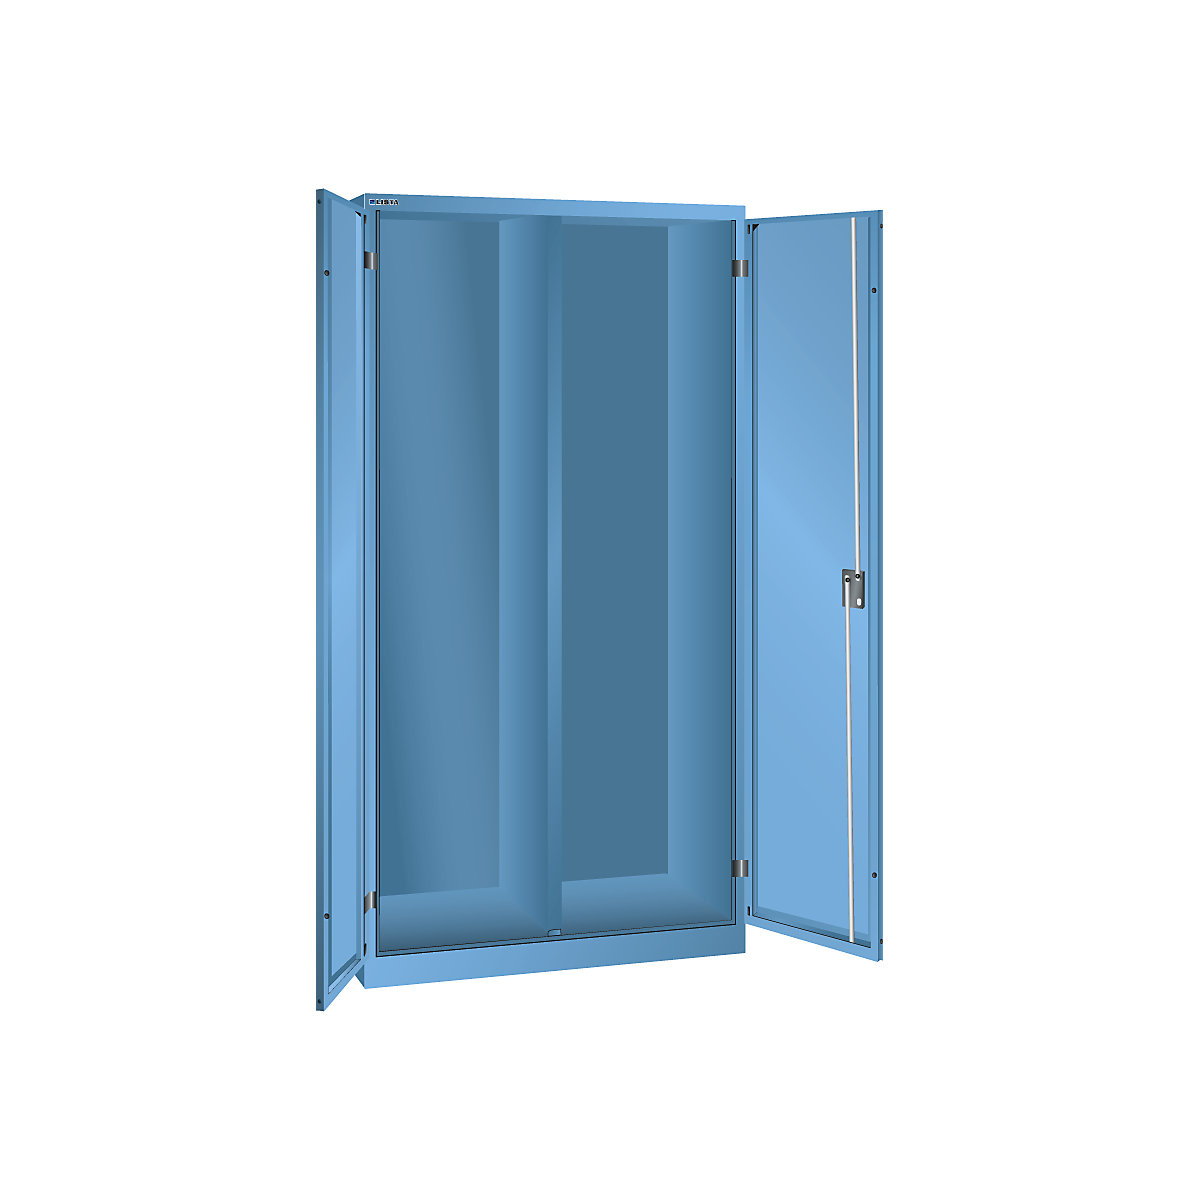 Armoire à portes battantes h x l x p 1950 x 1000 x 580 mm – LISTA, armoire vide avec cloison, bleu clair-9